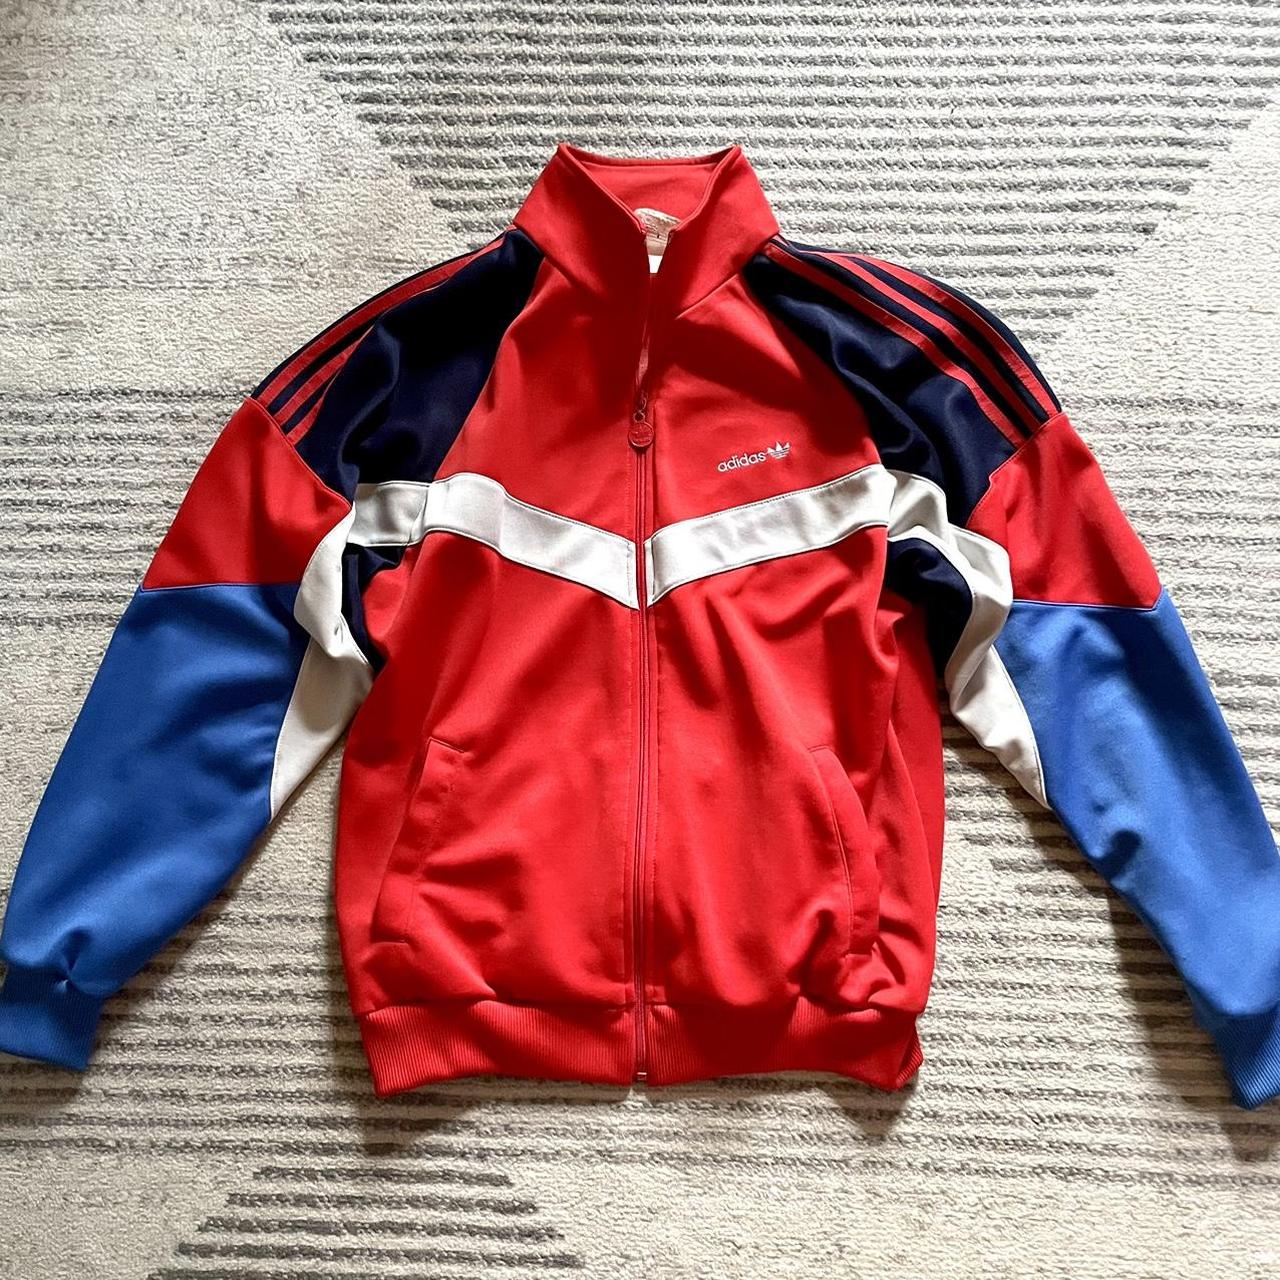 Vintage 80s Adidas Trefoil track jacket Size is... - Depop